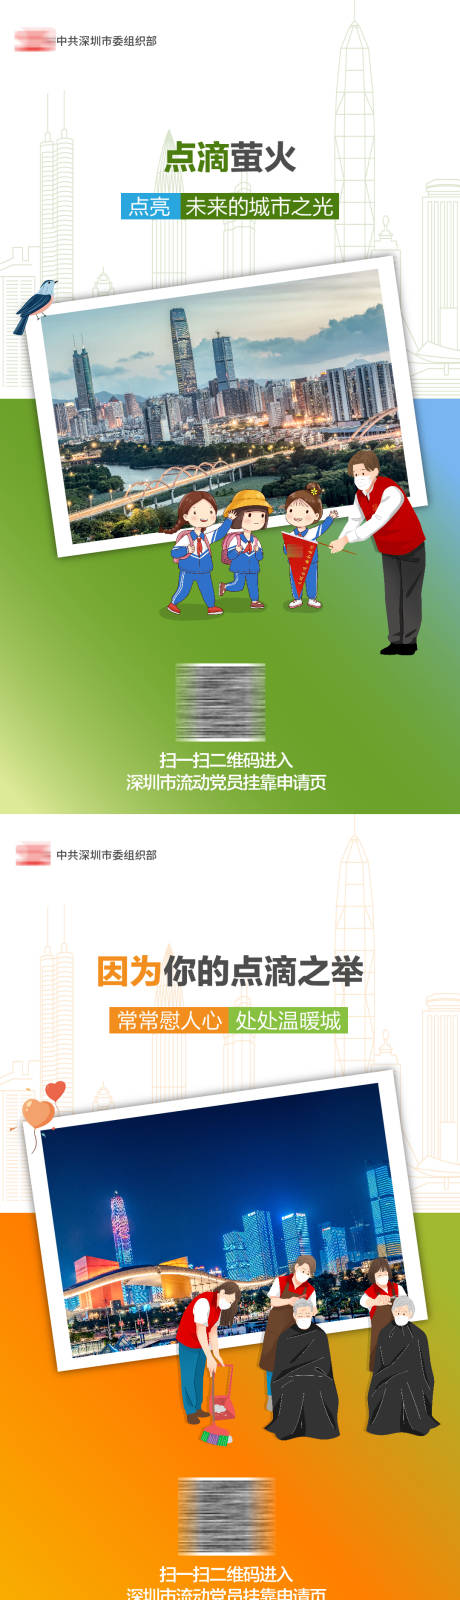 深圳市流动党员插画系列海报